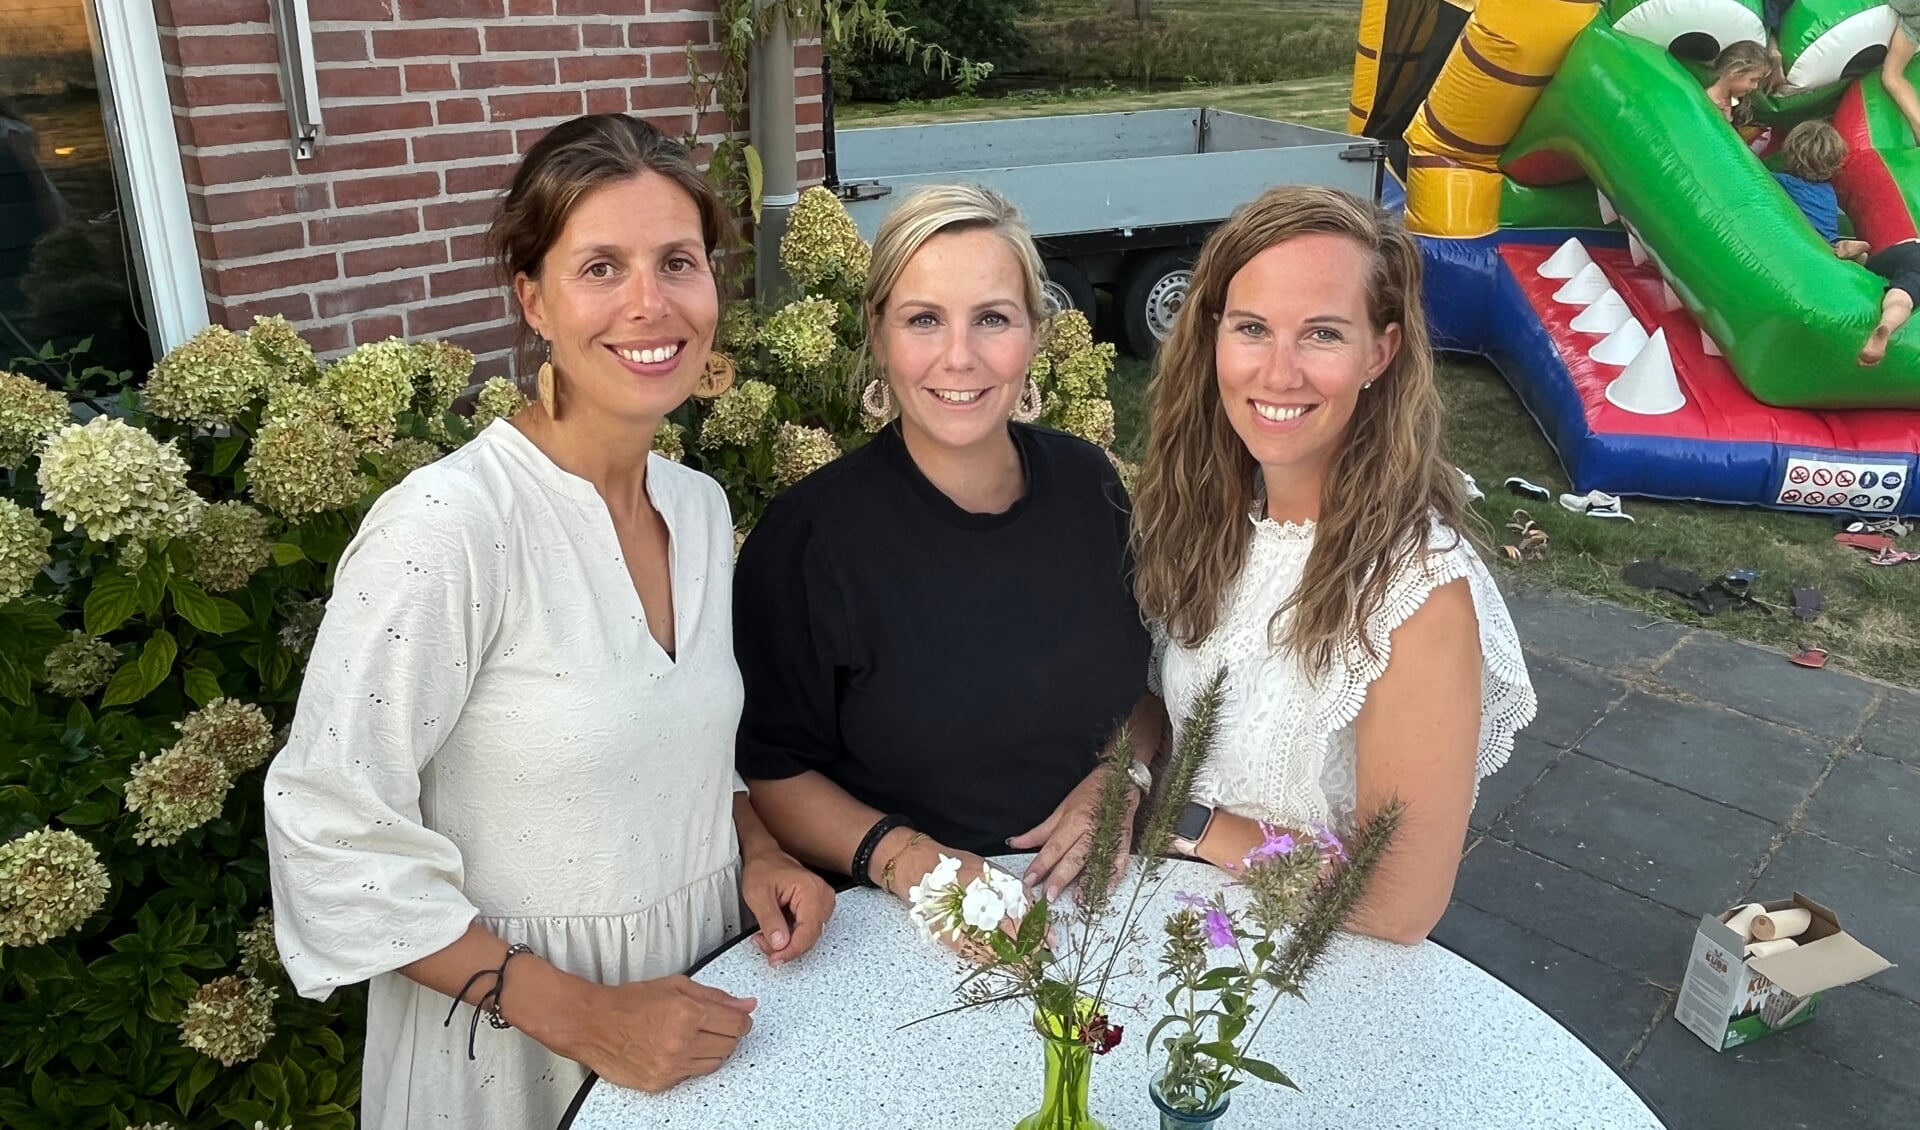 v.l.n.r. Sandra Burger, Kirsten de Leeuw en Jacqueline Bunnik